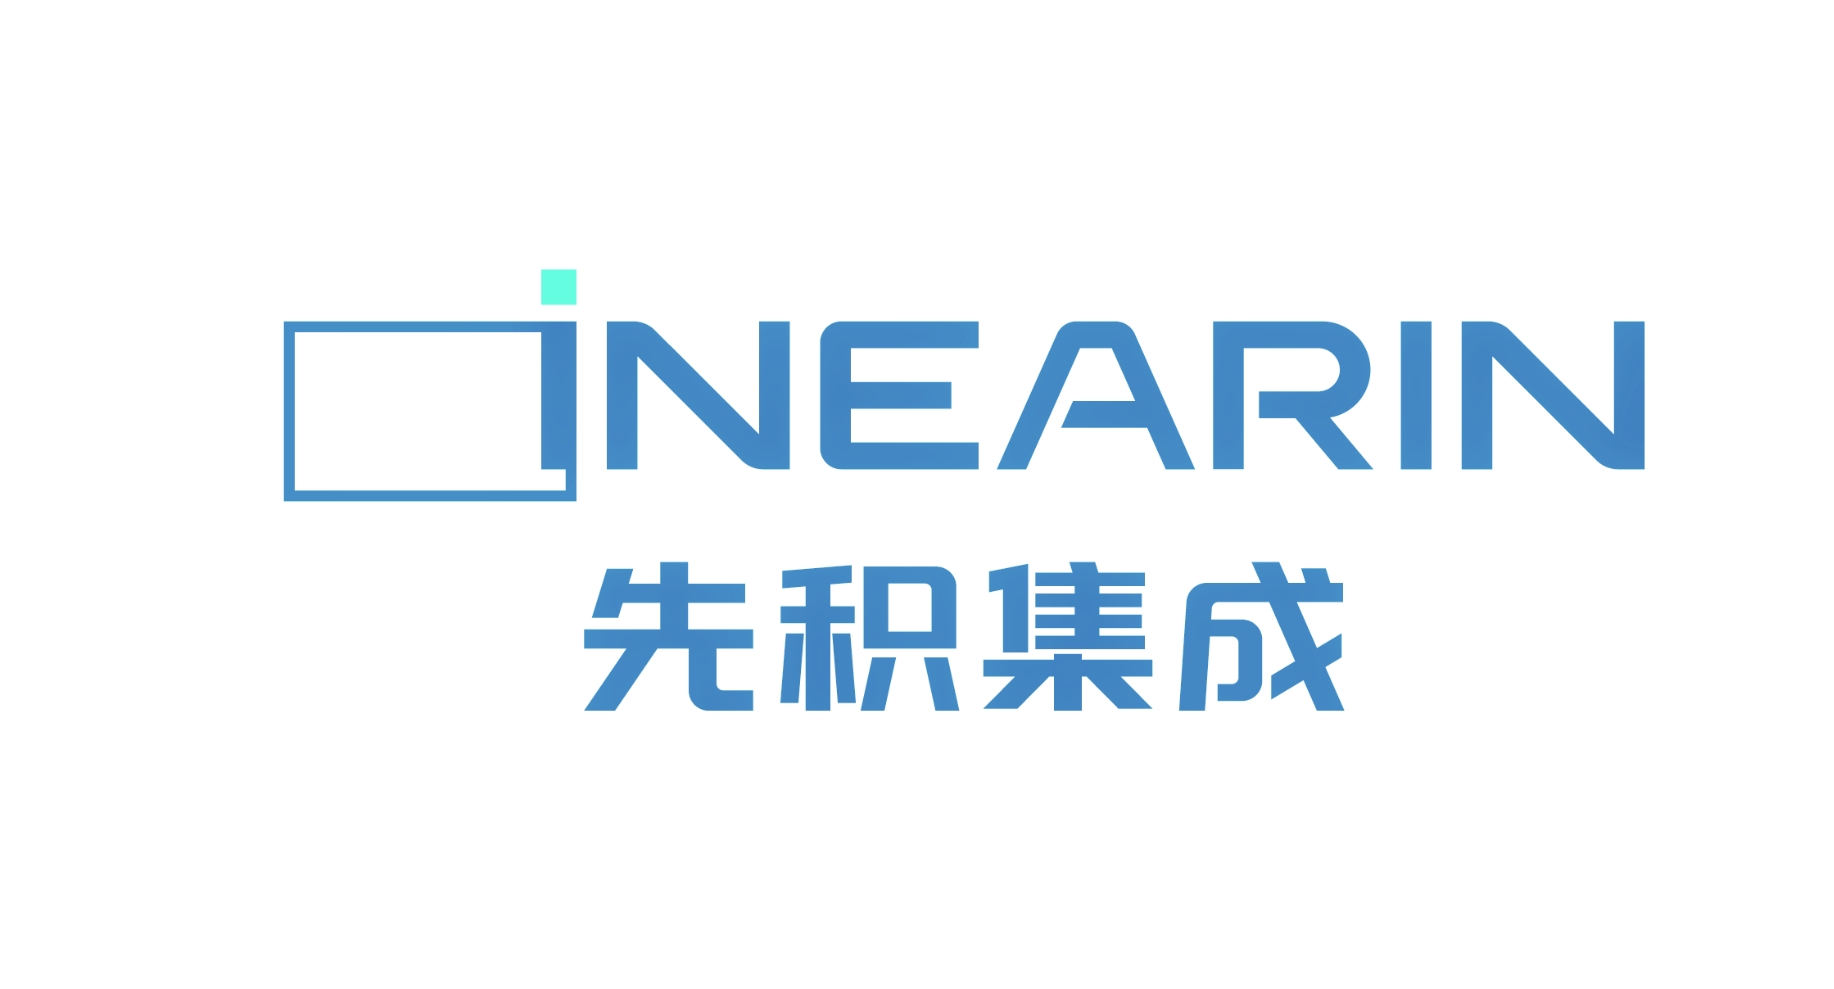 LinearIn Logo